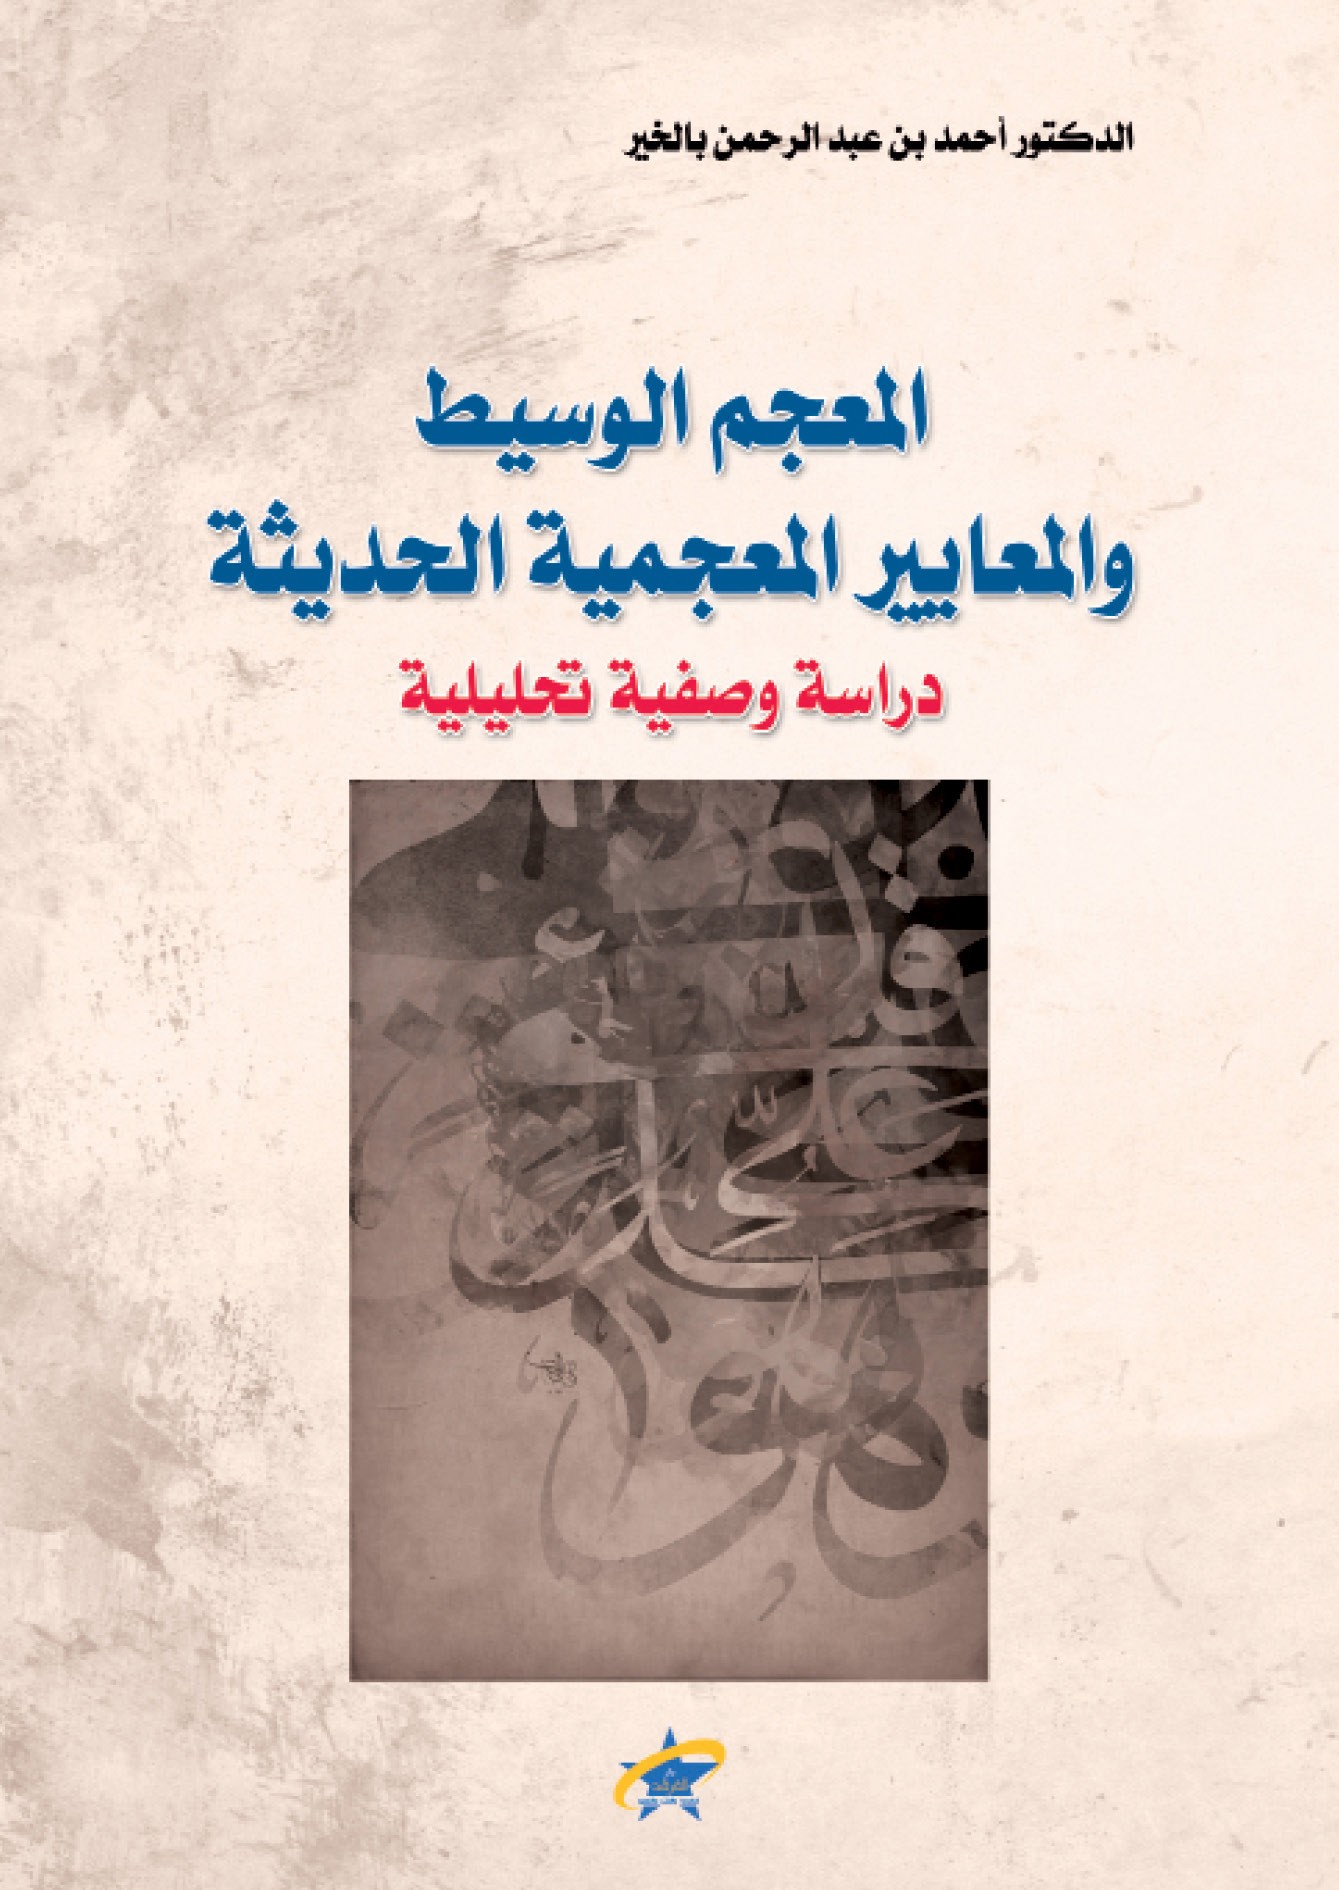 الكتاب المعجم الوسيط والمعايير المعجمية الحديثة دار الفرقد